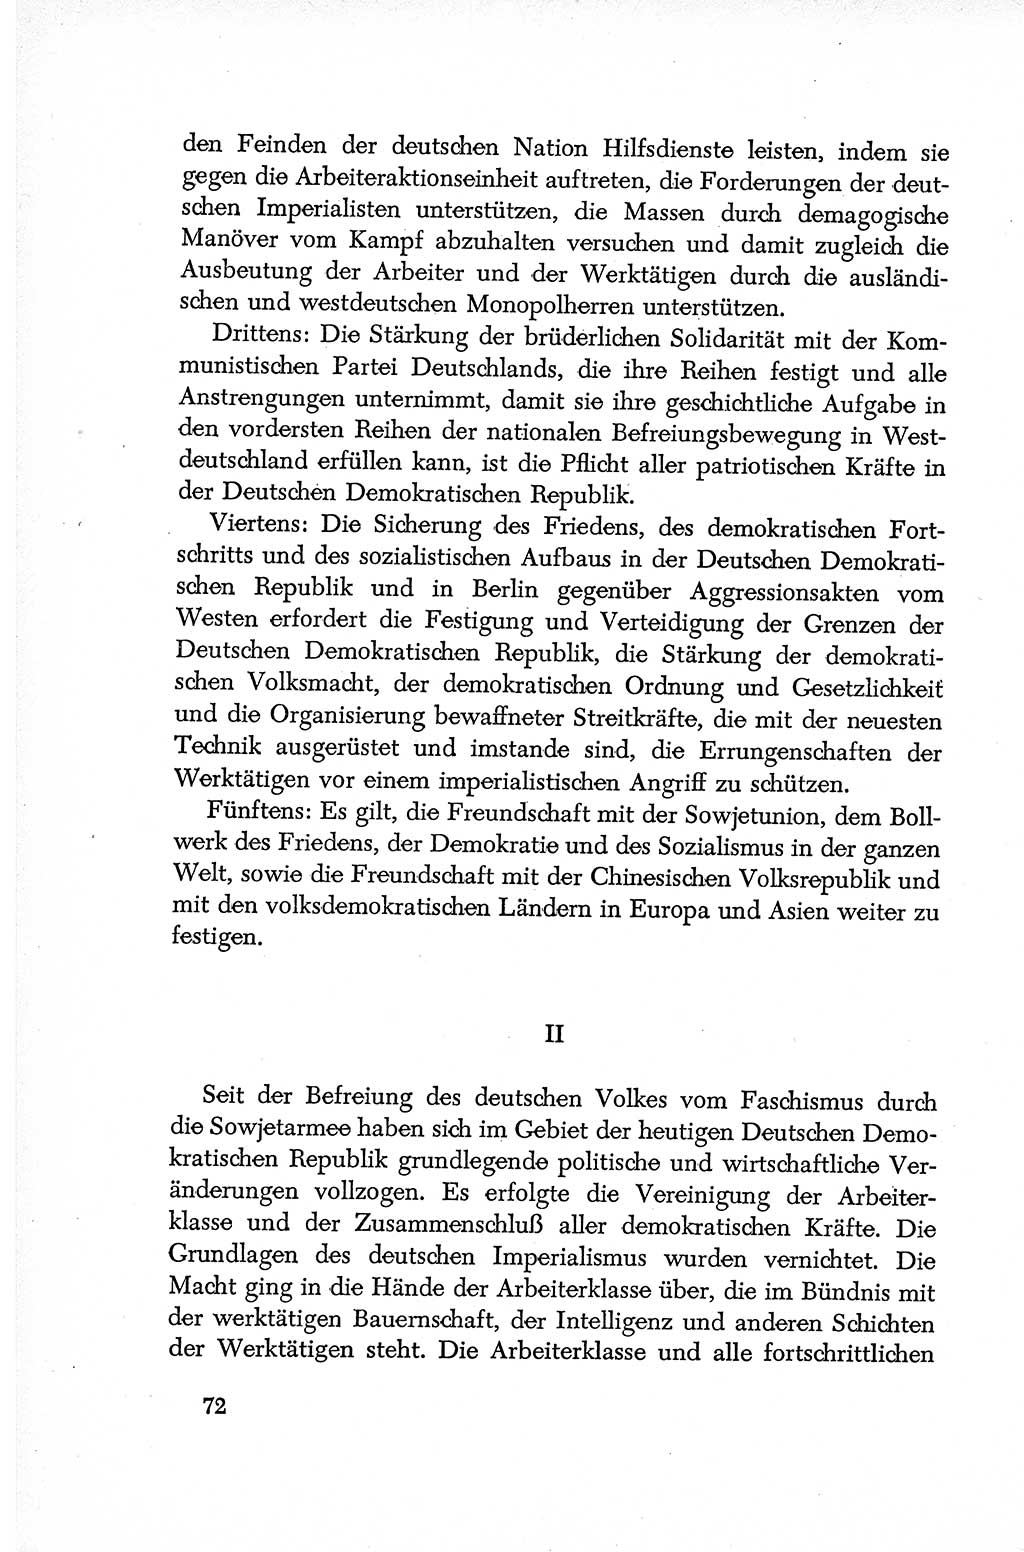 Dokumente der Sozialistischen Einheitspartei Deutschlands (SED) [Deutsche Demokratische Republik (DDR)] 1952-1953, Seite 72 (Dok. SED DDR 1952-1953, S. 72)